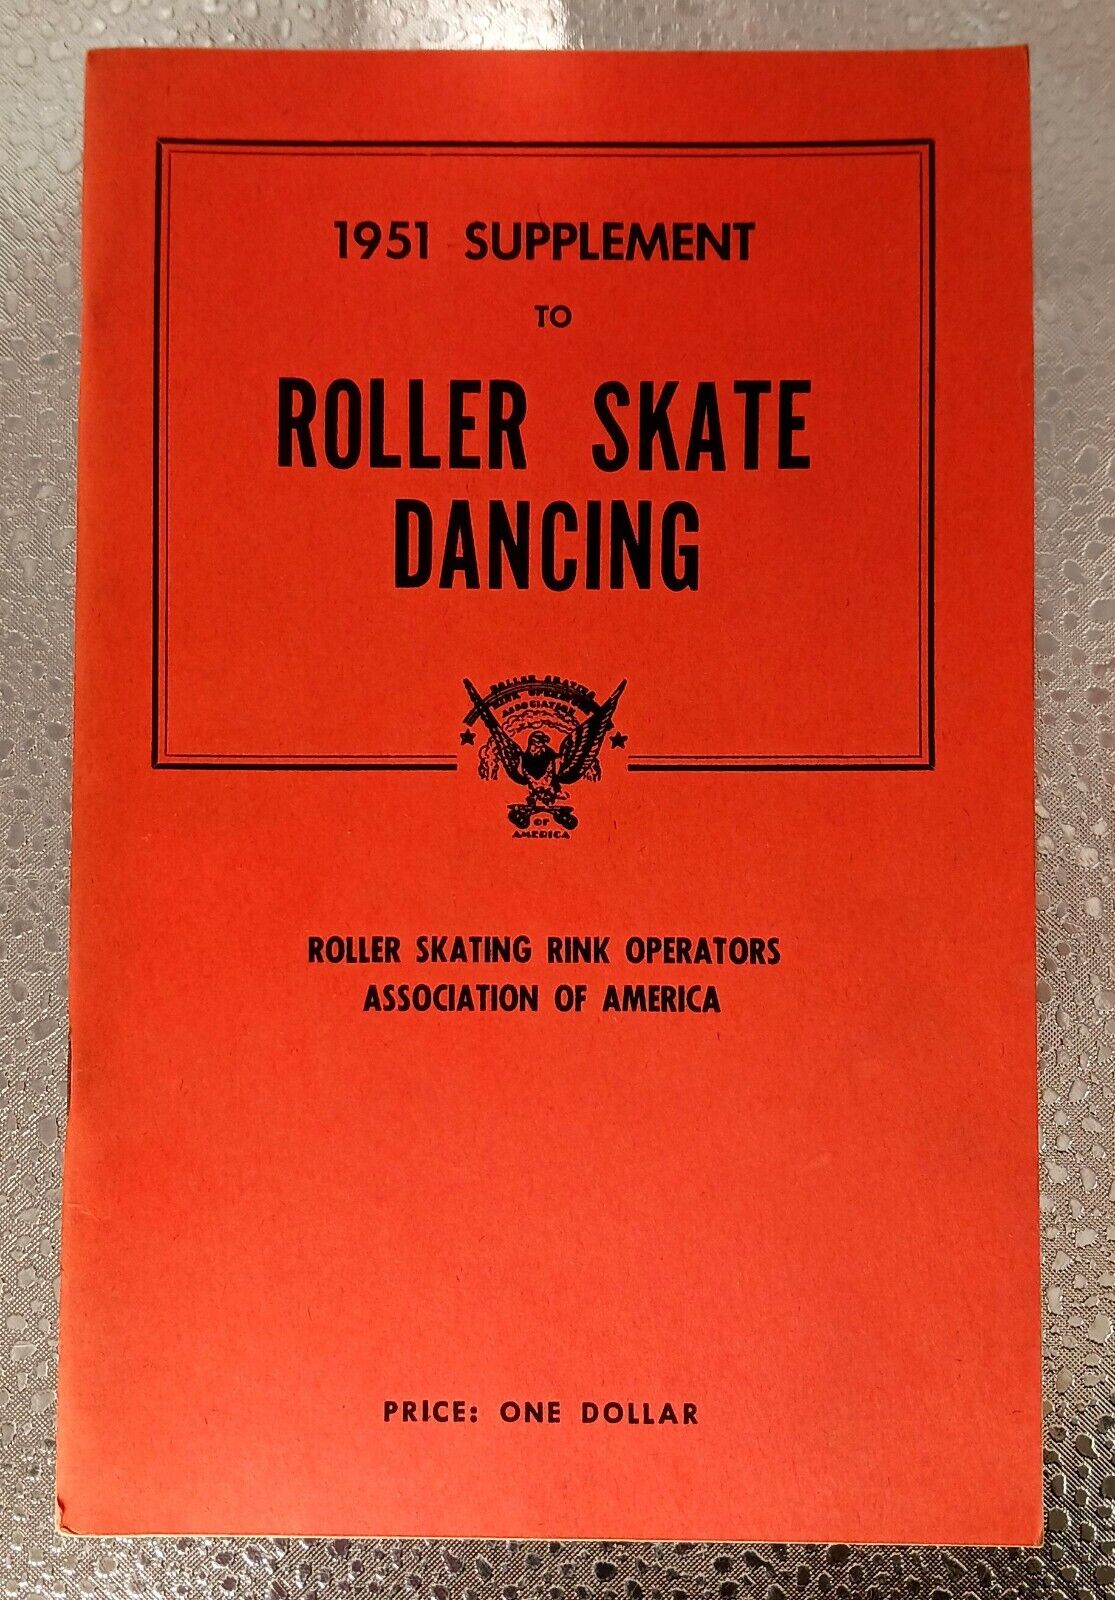 Vintage 1951 ROLLER SKATE DANCING BOOKLET Supplement Instructions RSROA